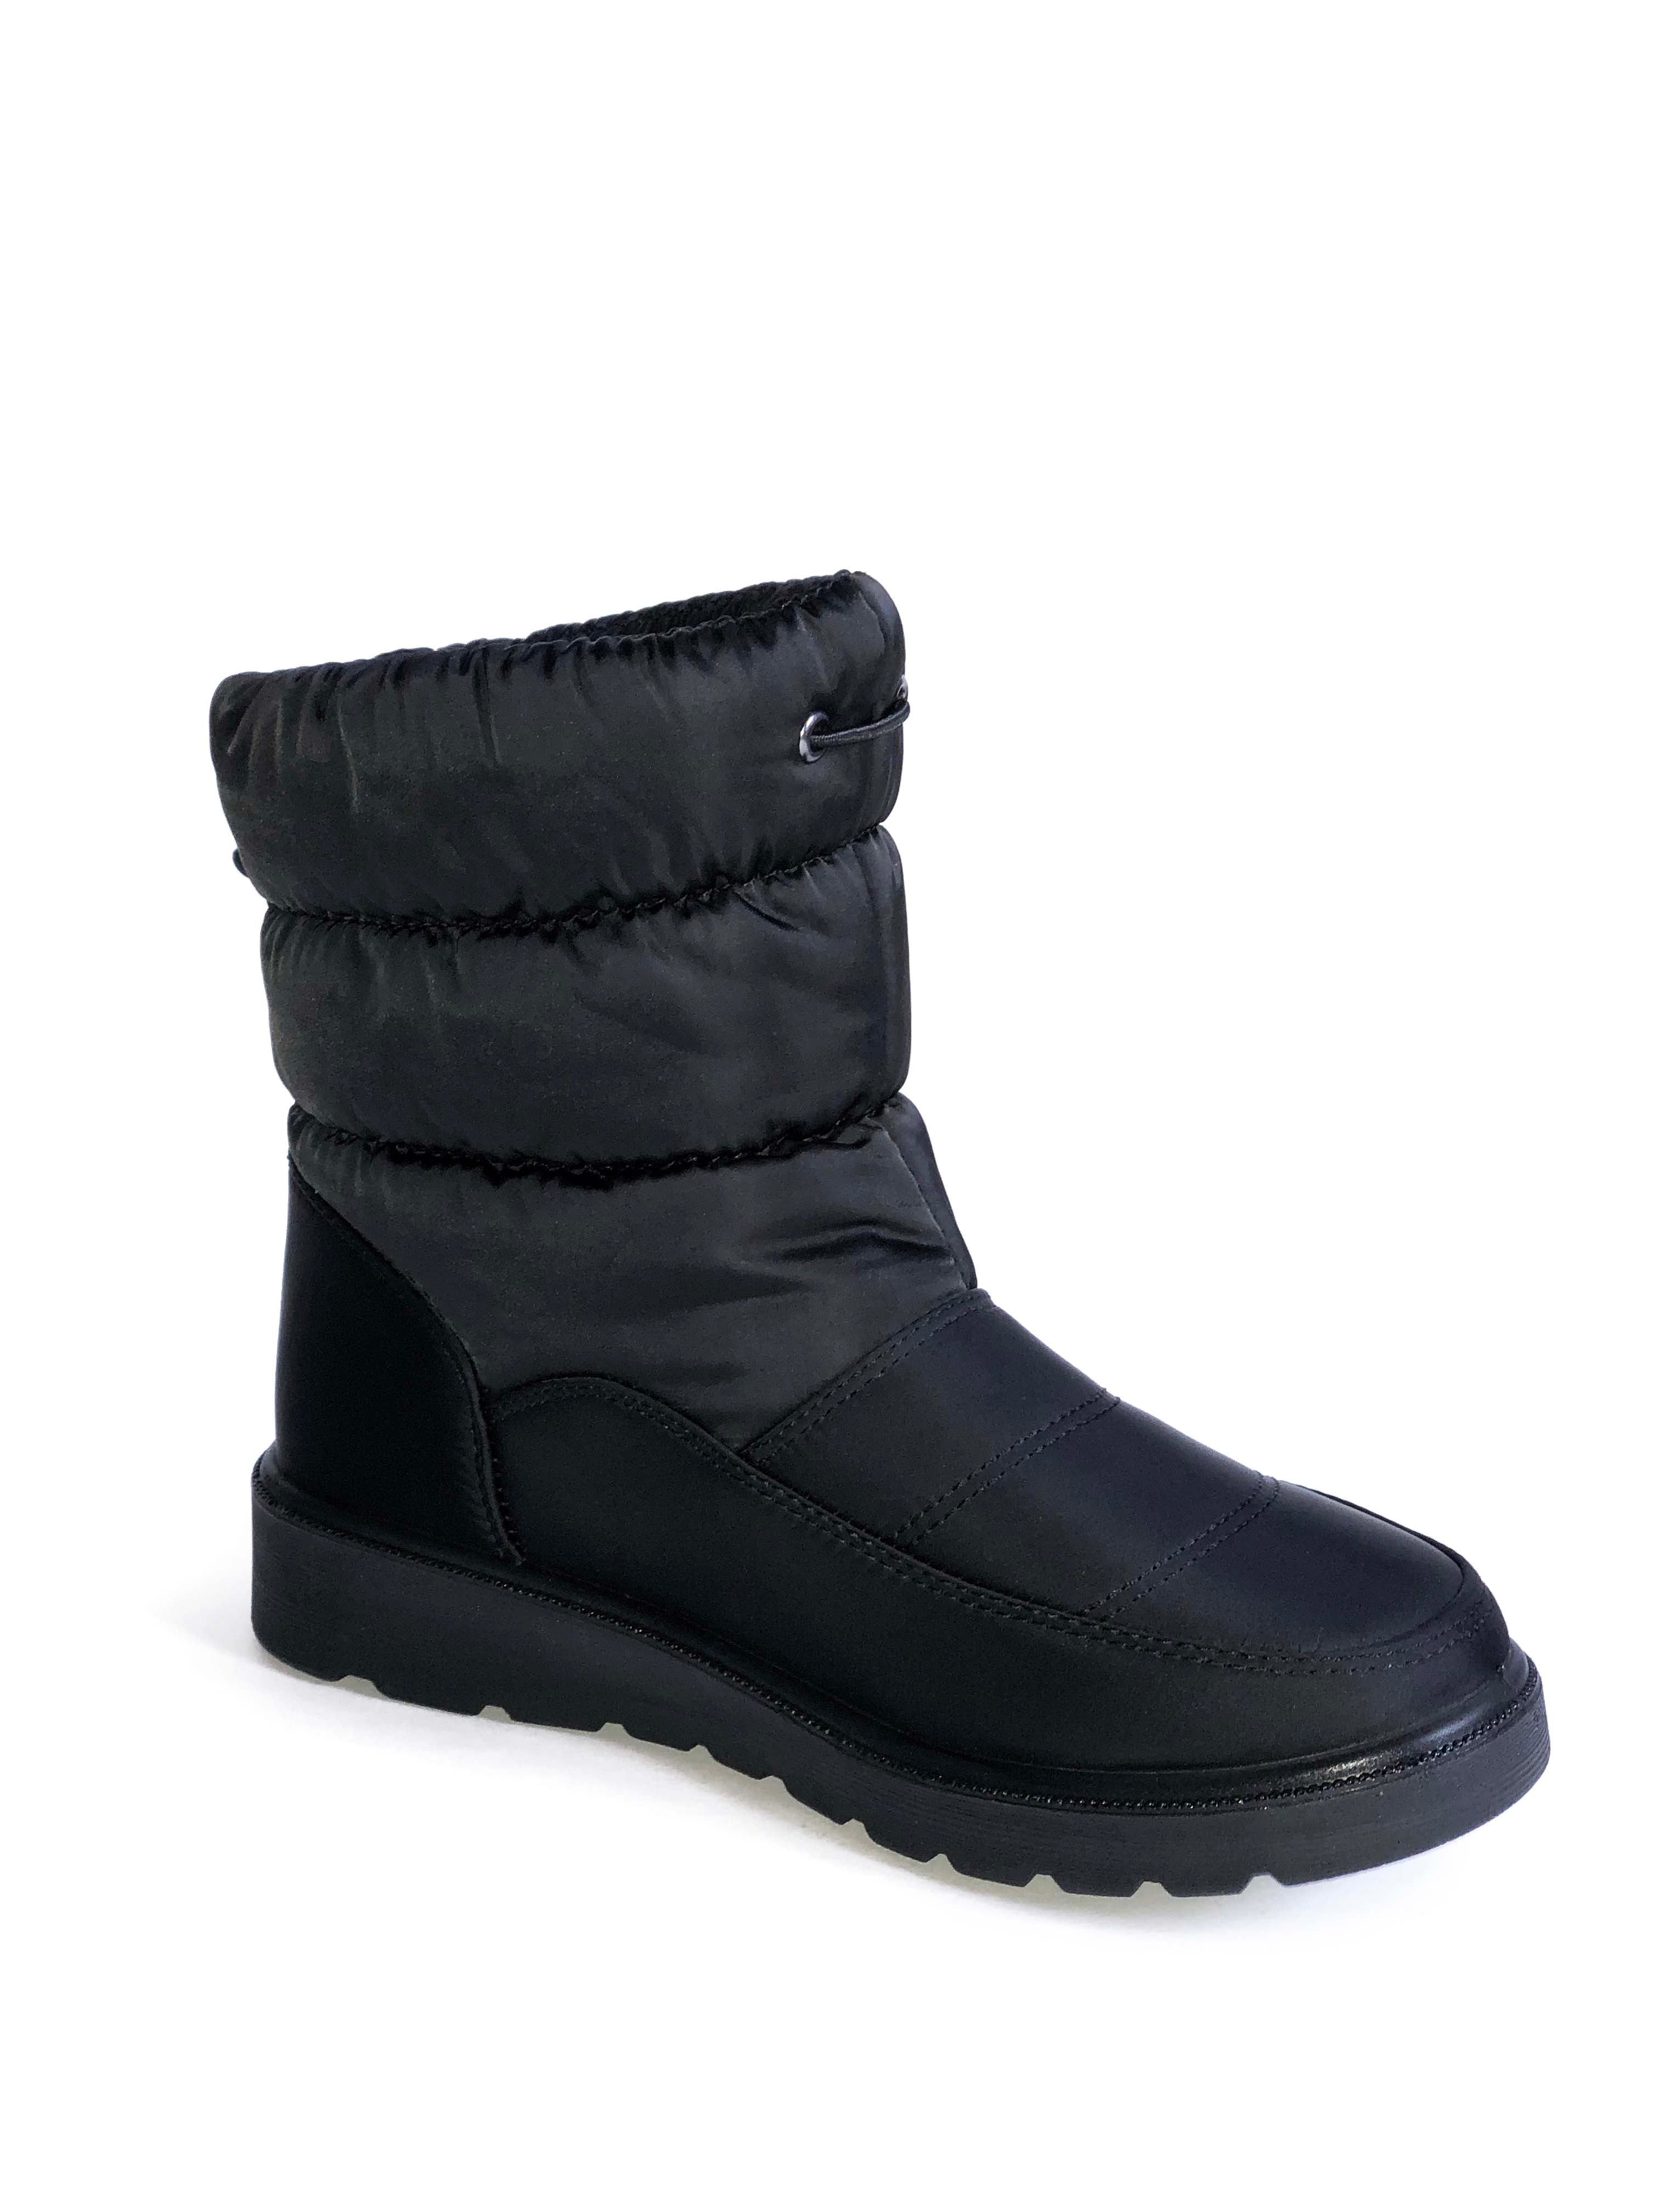 Botin negro de nieve Coleen 1 - Black Ankle Boot Coleen 1